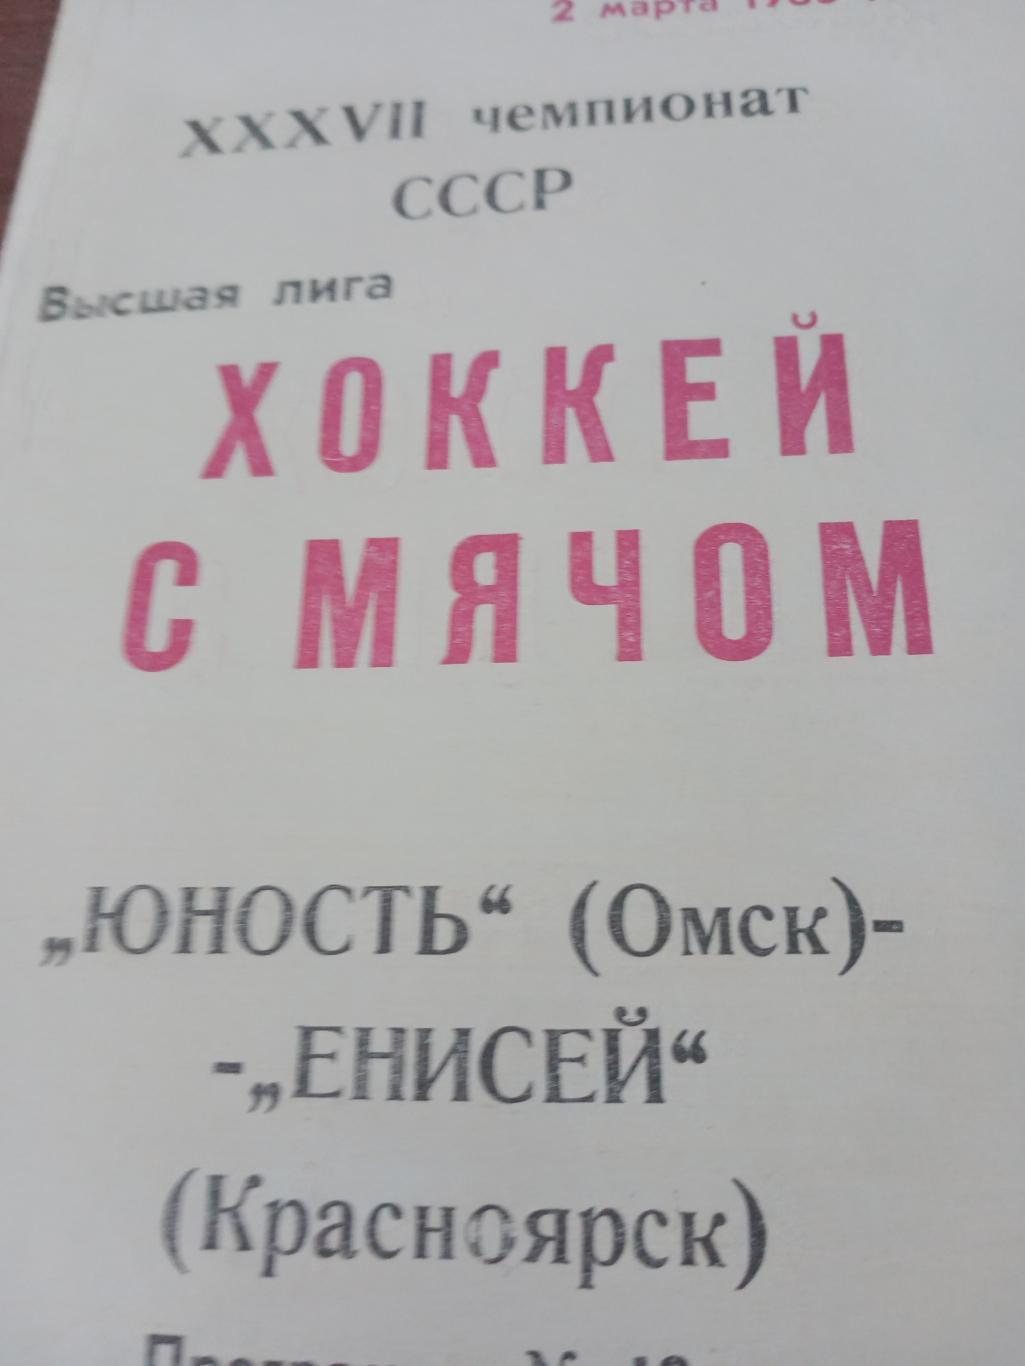 + Газетный отчет. Юность Омск - Енисей Красноярск. 2 марта 1985 год